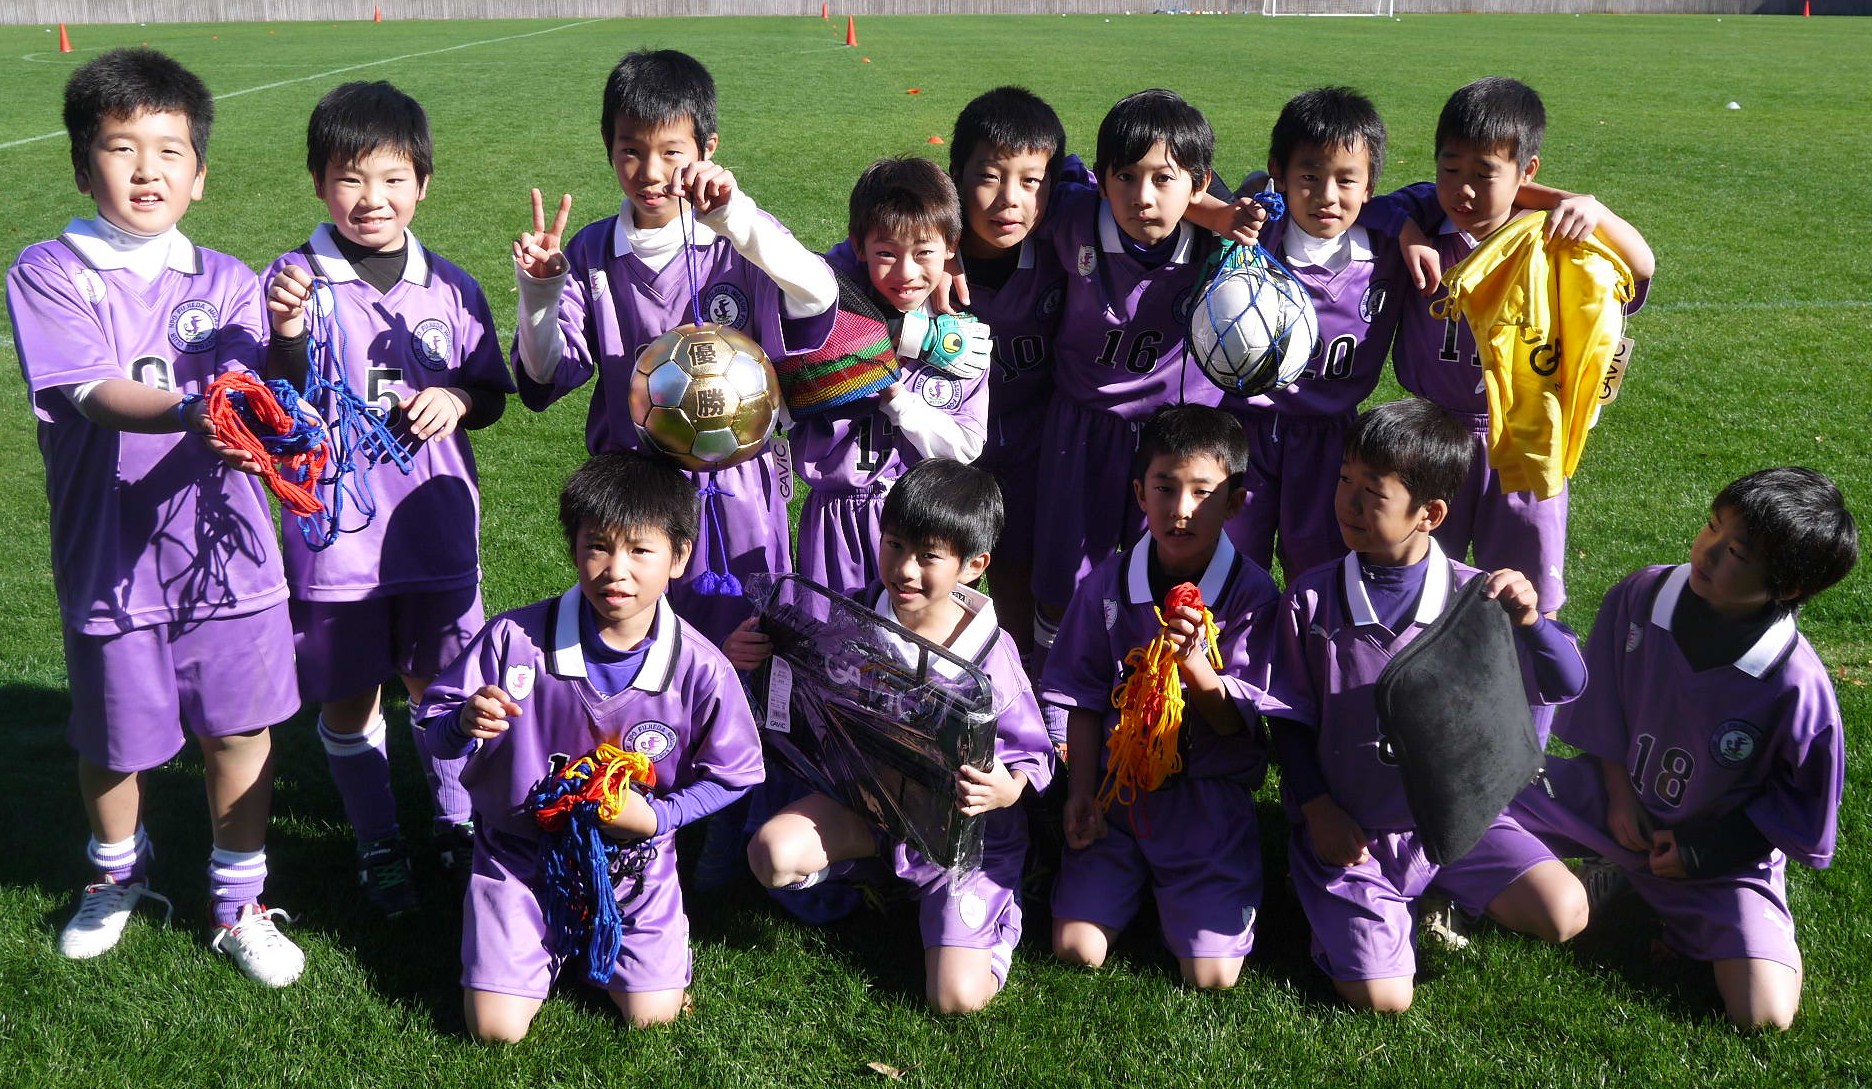 藤枝総合運動公園ジュニアサッカー交流大会を開催しました